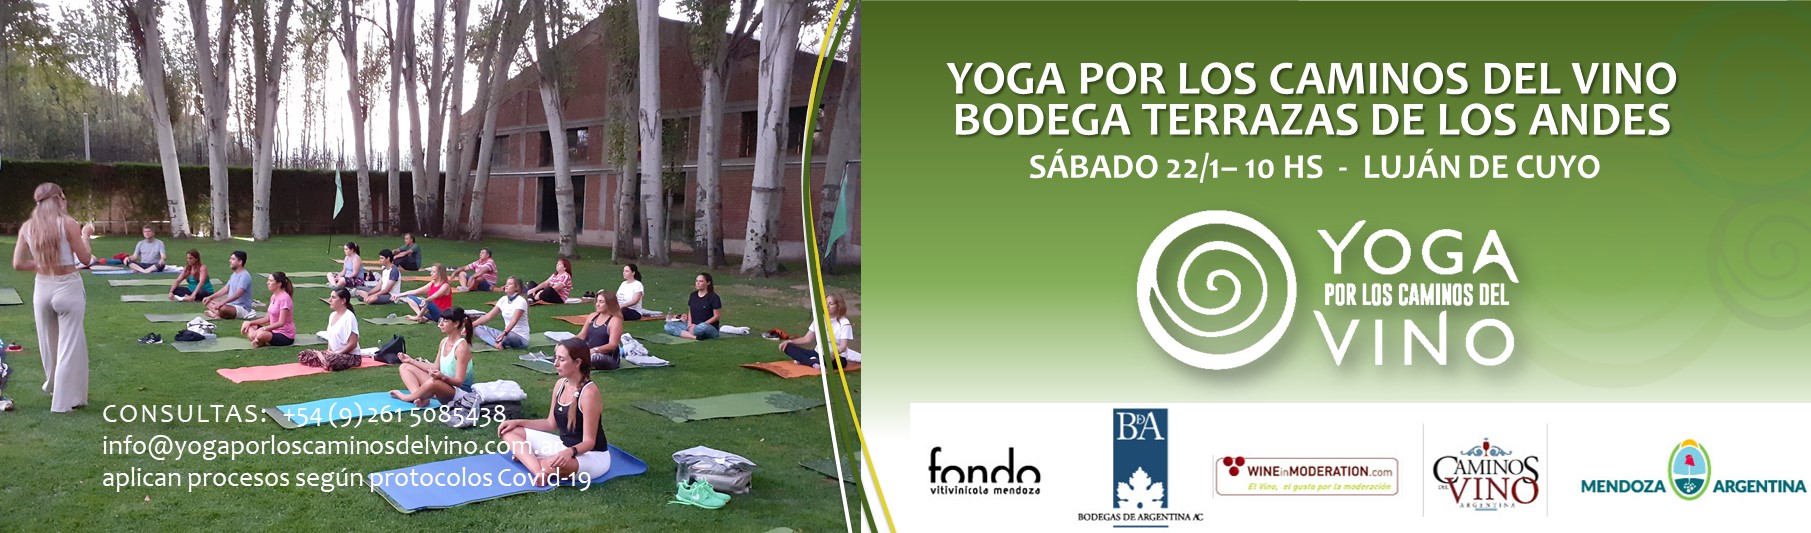 yoga-por-los-caminos-del-vino_Yoga en Terrazas Enero 20222 - PLACA WEB 2